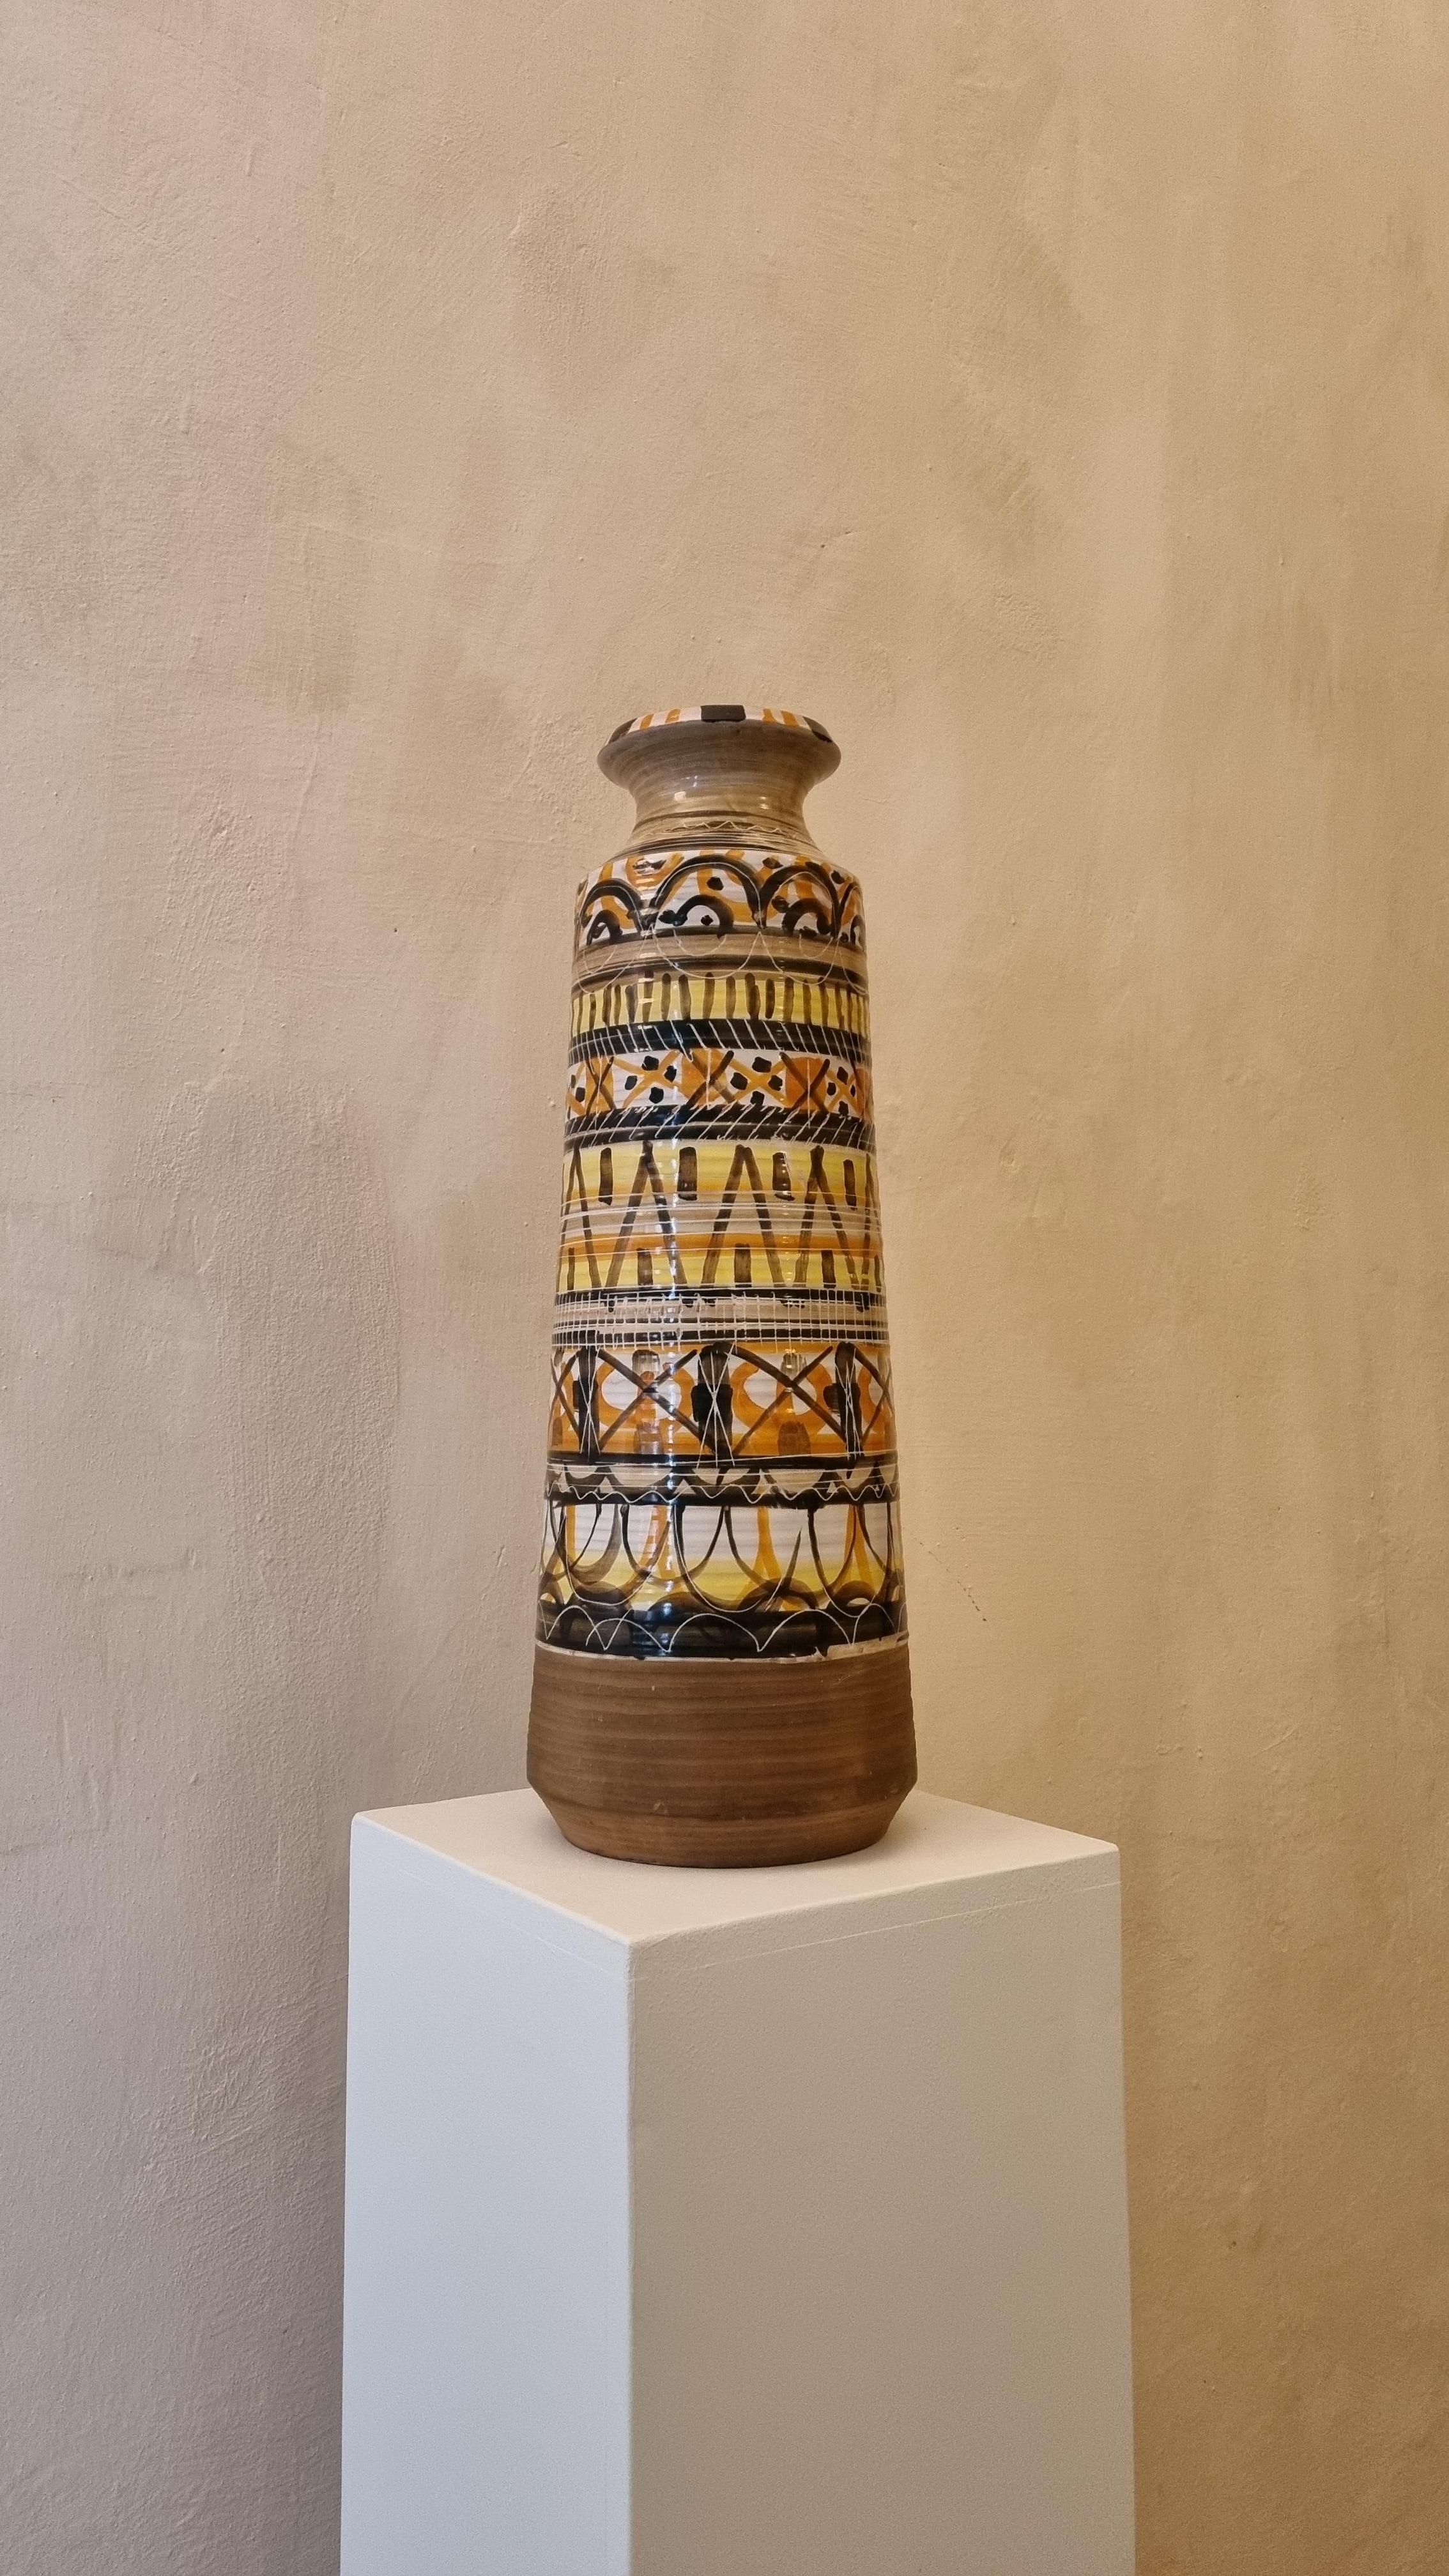 Keramische Lampenfassung von Aldo Londi für Ceramiche Bitossi Montelupo, 1970 .
Keramik glasiert, handbemalt, signiert.
Dieses seltene Modell  wurde in einer limitierten Serie von  stücke,
Jedes von Bitossi geschaffene Werk folgt einem sehr